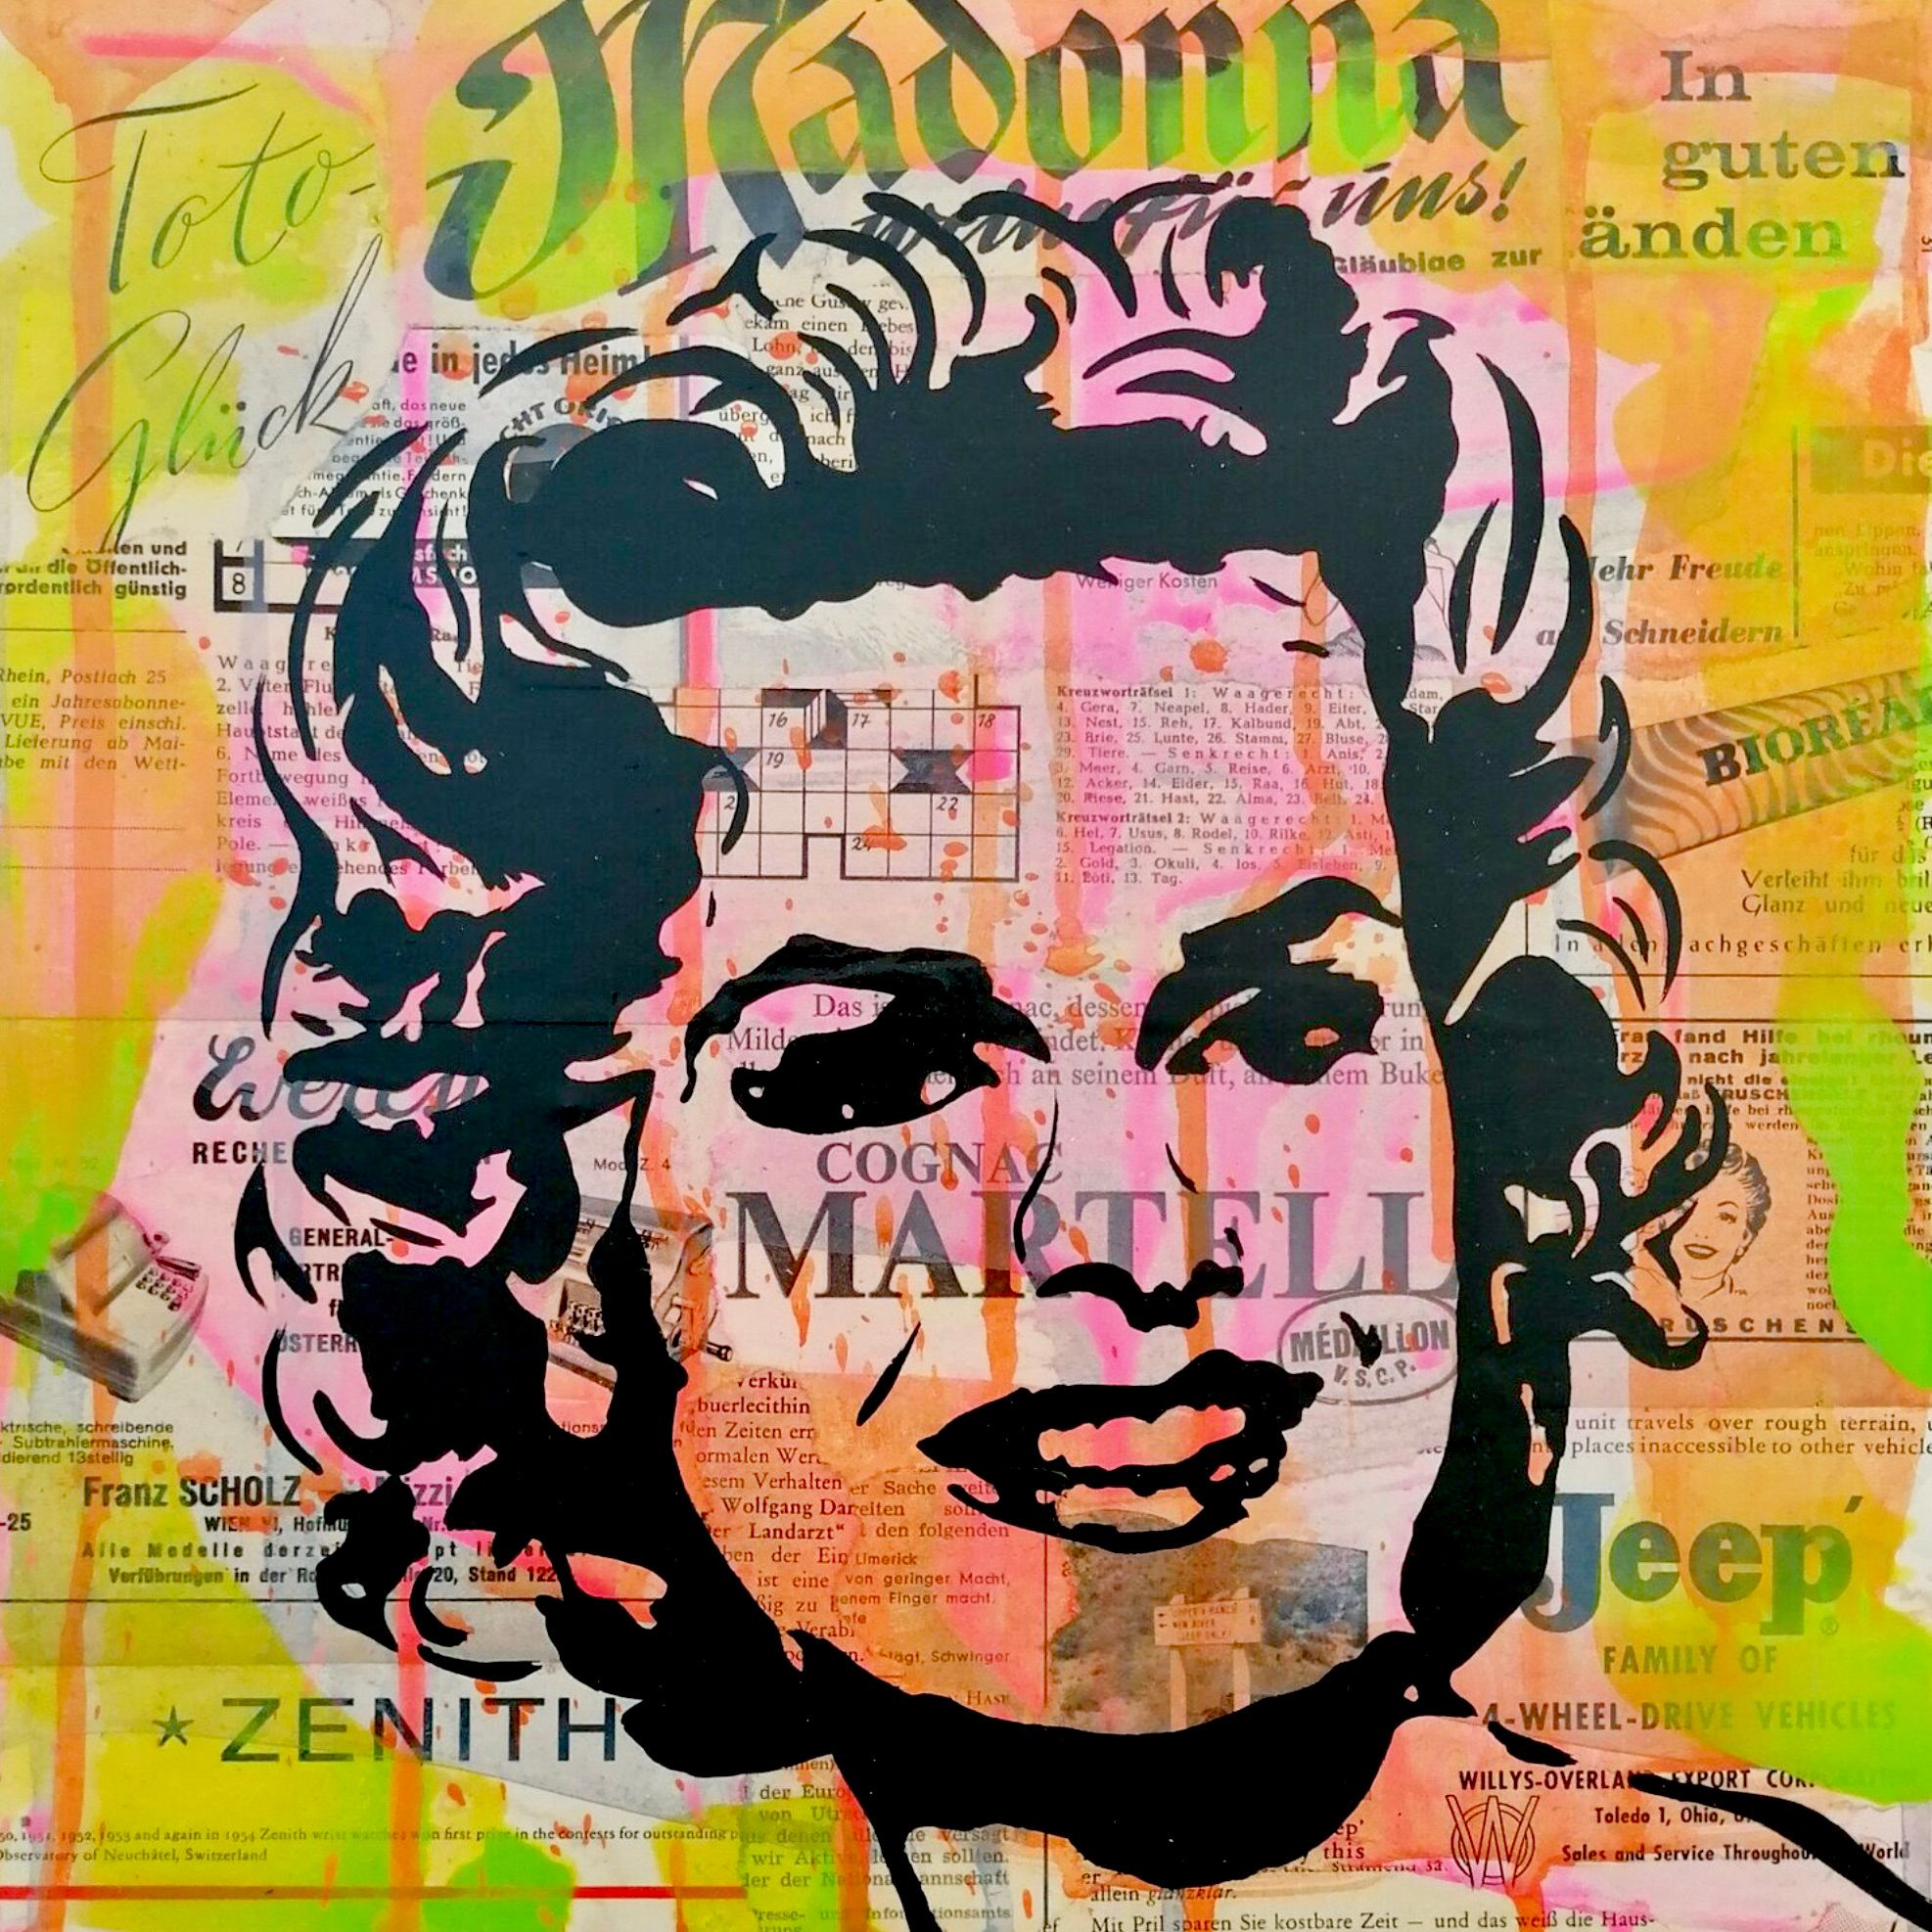 Holger Zimmermann's "Madonna" farbenfrohe Pop-Art Fotocollage mit digitalen Überlagerungen.